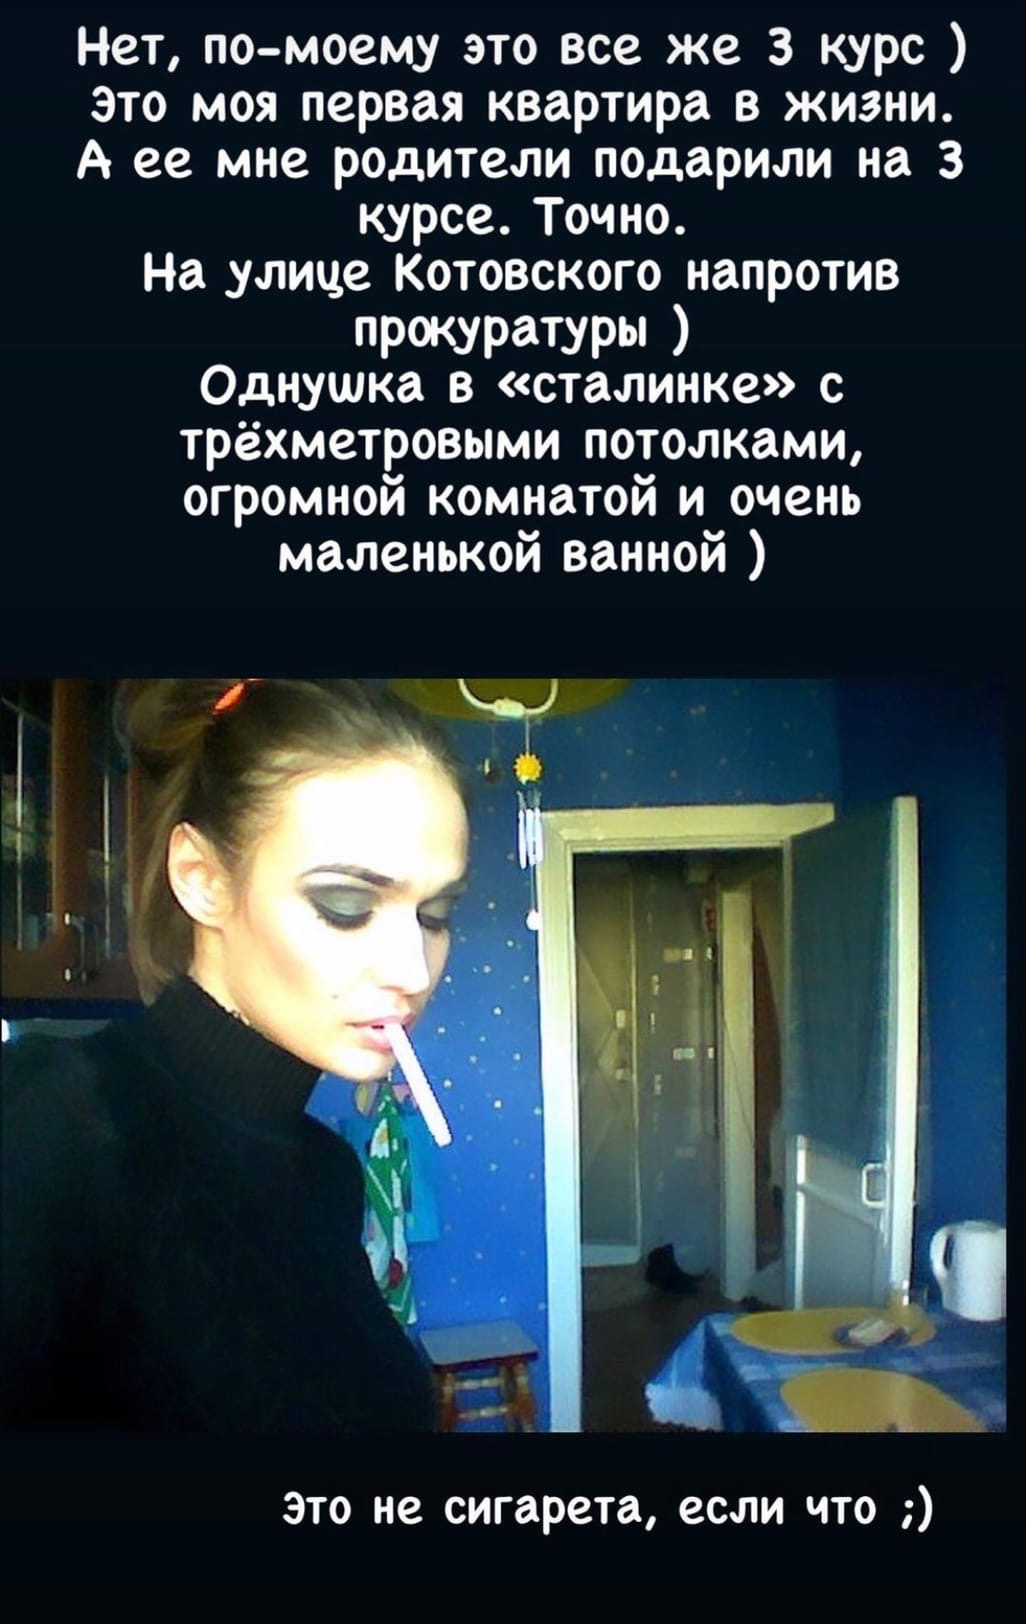 Однушка в «сталинке» находилась в доме напротив прокуратуры